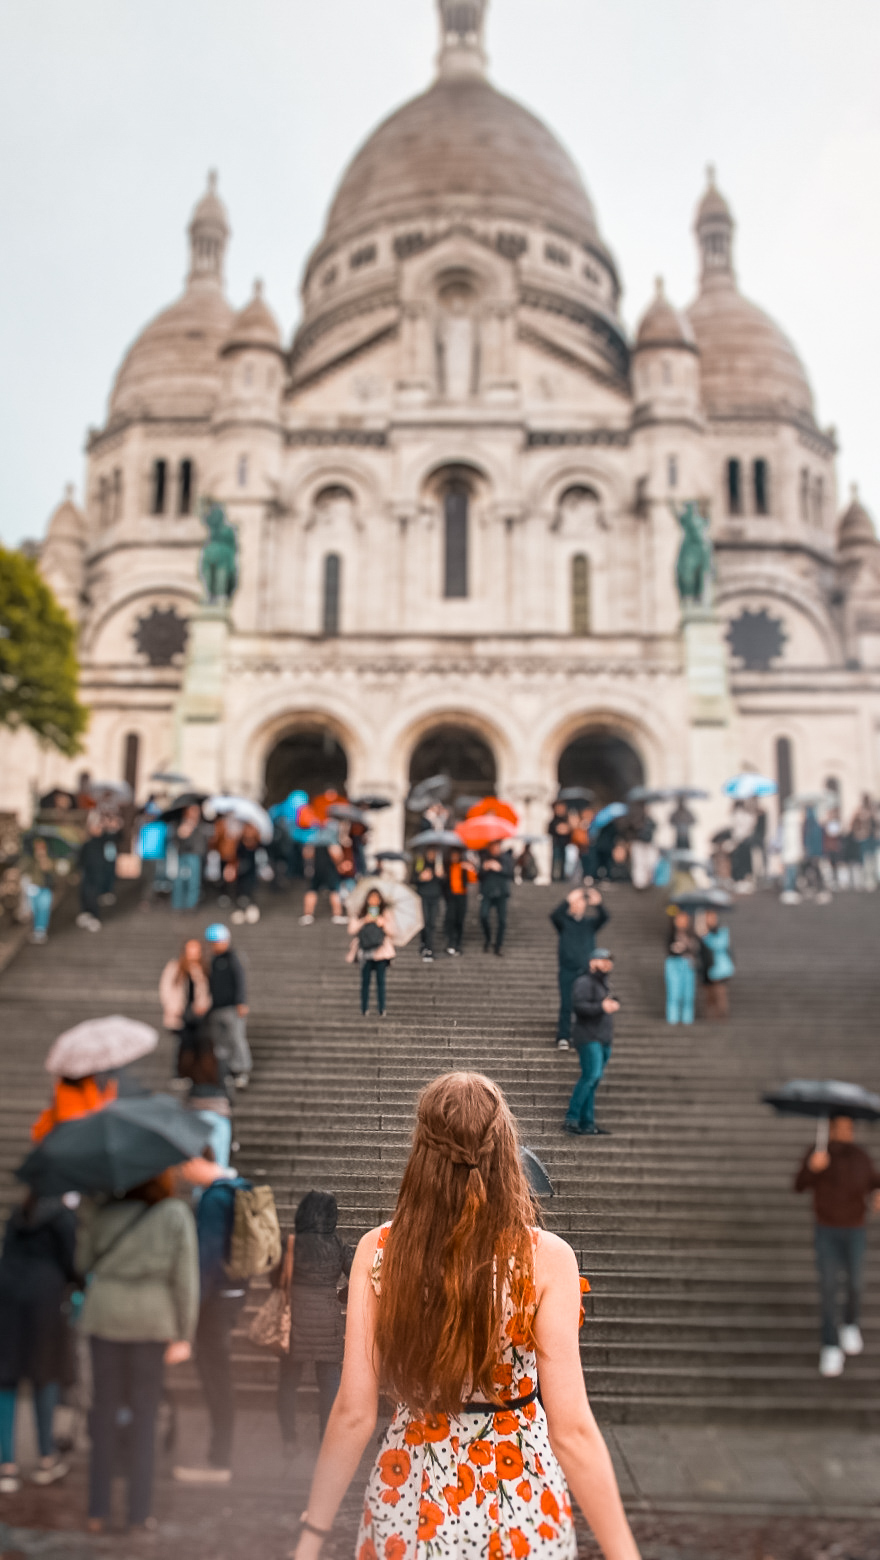 sacre coeur paris
Top 10 Photo Spots in Paris